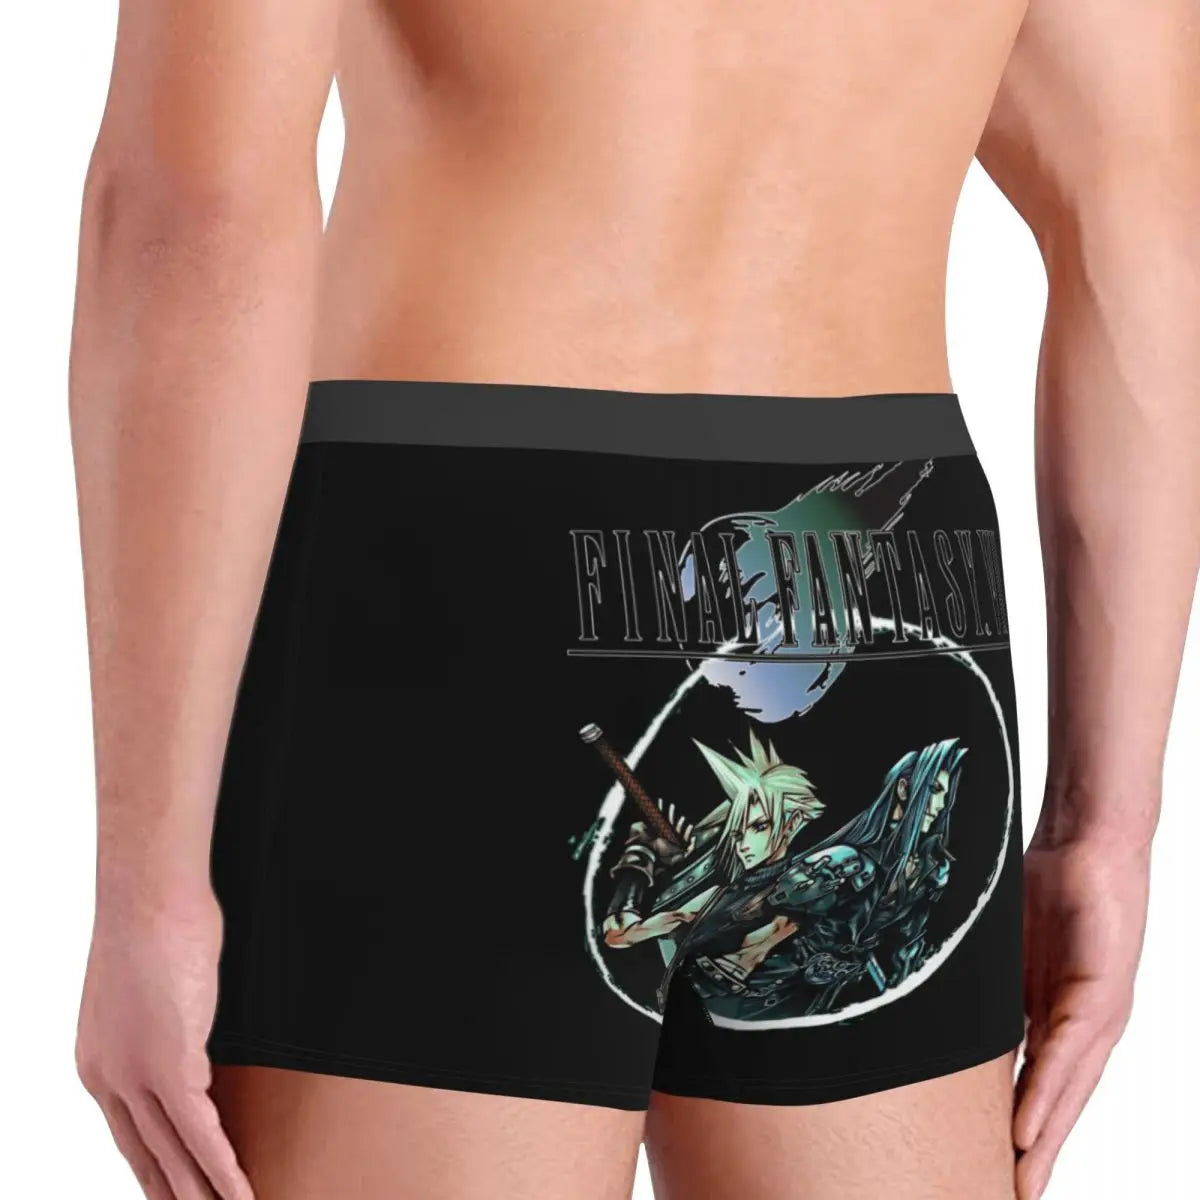 Calzoncillos tipo bóxer para hombre, pantalones cortos, bragas Cloud &amp; Sephiroth, ropa interior suave, videojuego Final Fantasy VII, calzoncillos sexis de S-XXL para hombre